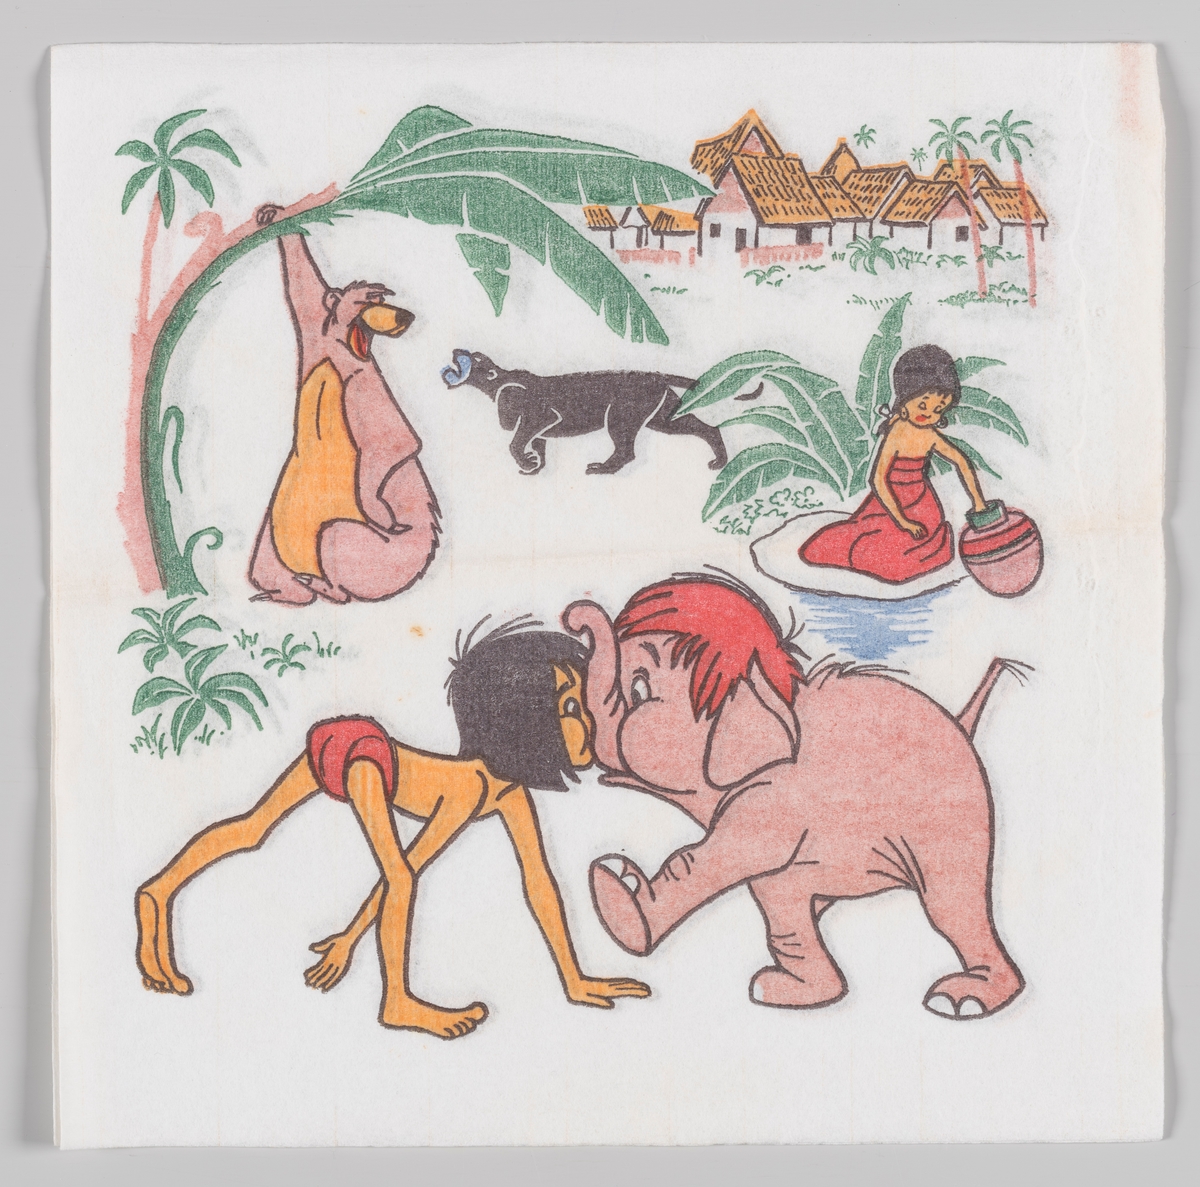 Mowgli og elefantungen støtter sammen nese mot snabbel. I bakgrunnen bjørnen Baloo, den sorte panter Bagheera og en jente fra landsbyen.

Animasjonfilmen Jungelboken fra Walt Disney hadde kom i 1967.

Samme motiv som serviett MIA.00007-0155.